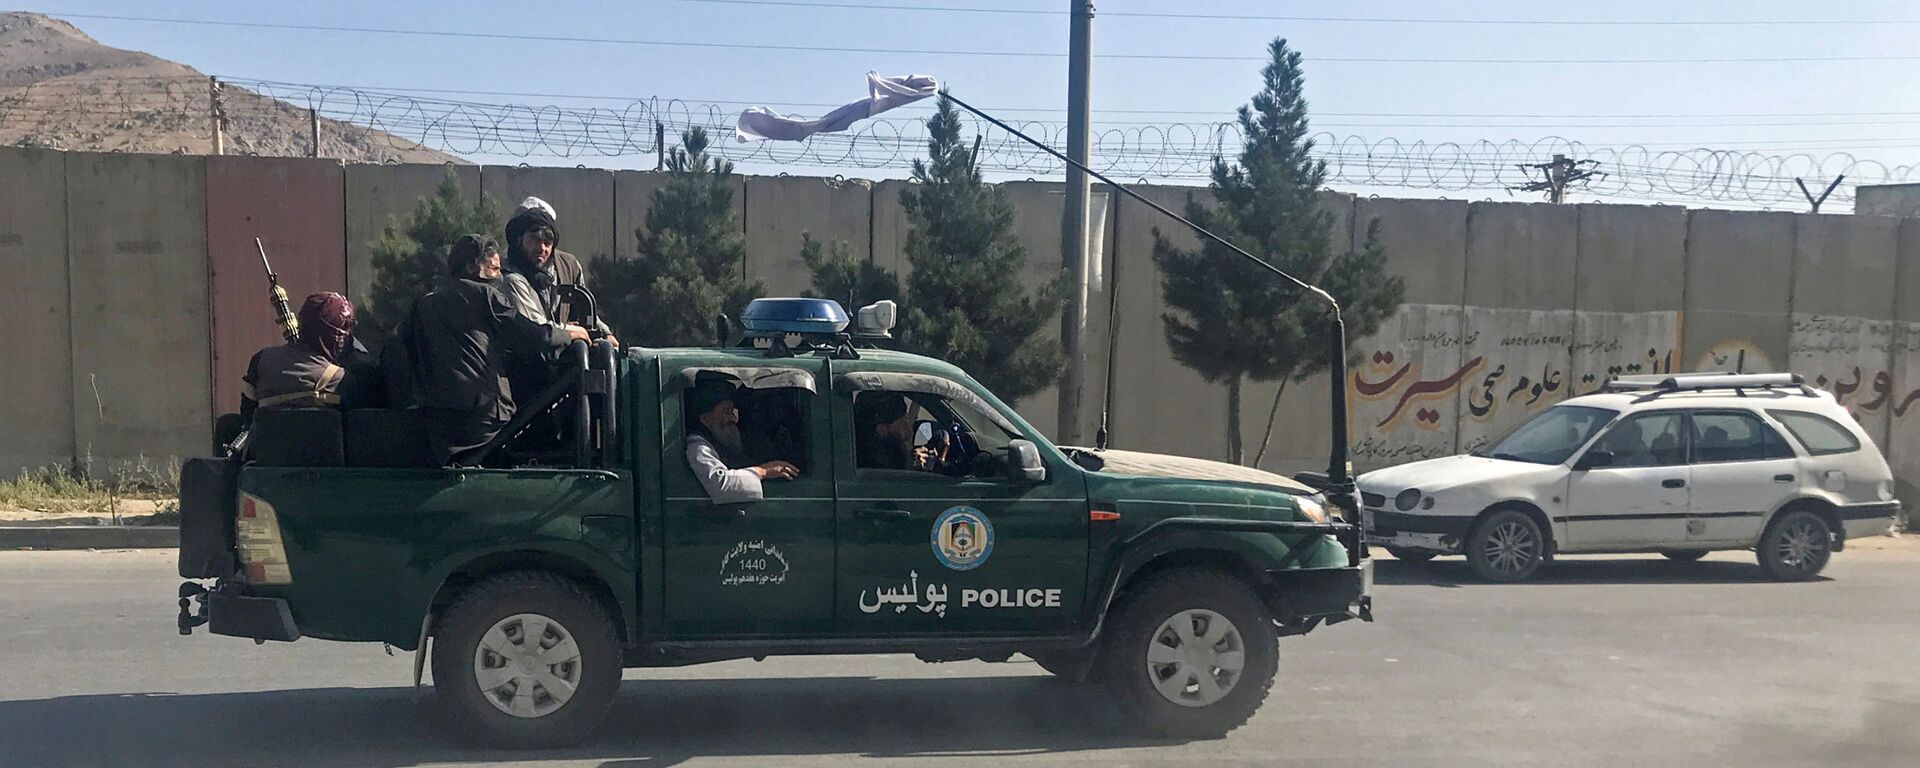 Combatientes talibanes viajan en un vehículo policial en Kabul - Sputnik Mundo, 1920, 17.08.2021